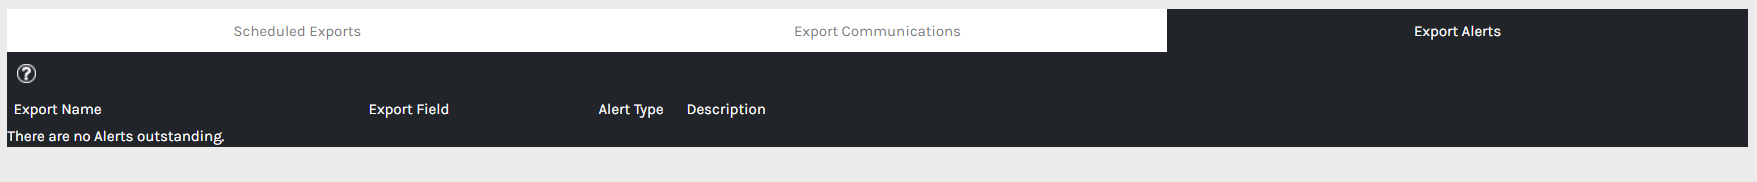 Export_Alerts_-_00.png